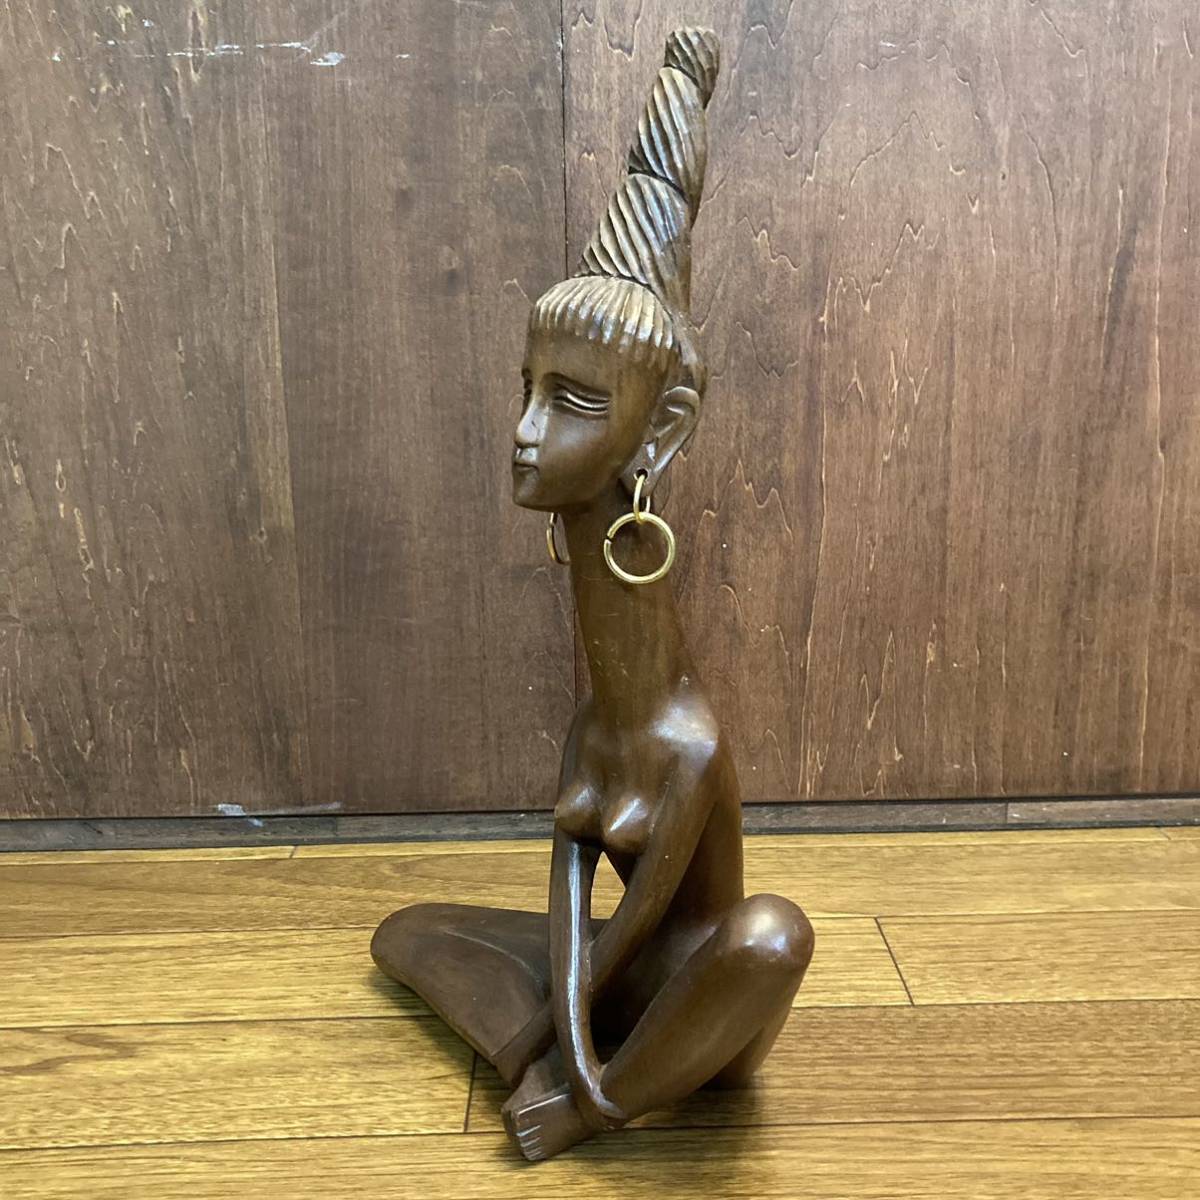 ビンテージ アフリカ 彫刻 木彫り 置物 オブジェ 首長族 裸婦像 アート インテリア アンティーク バリ ハワイアン 民族 プリミティブ_画像3